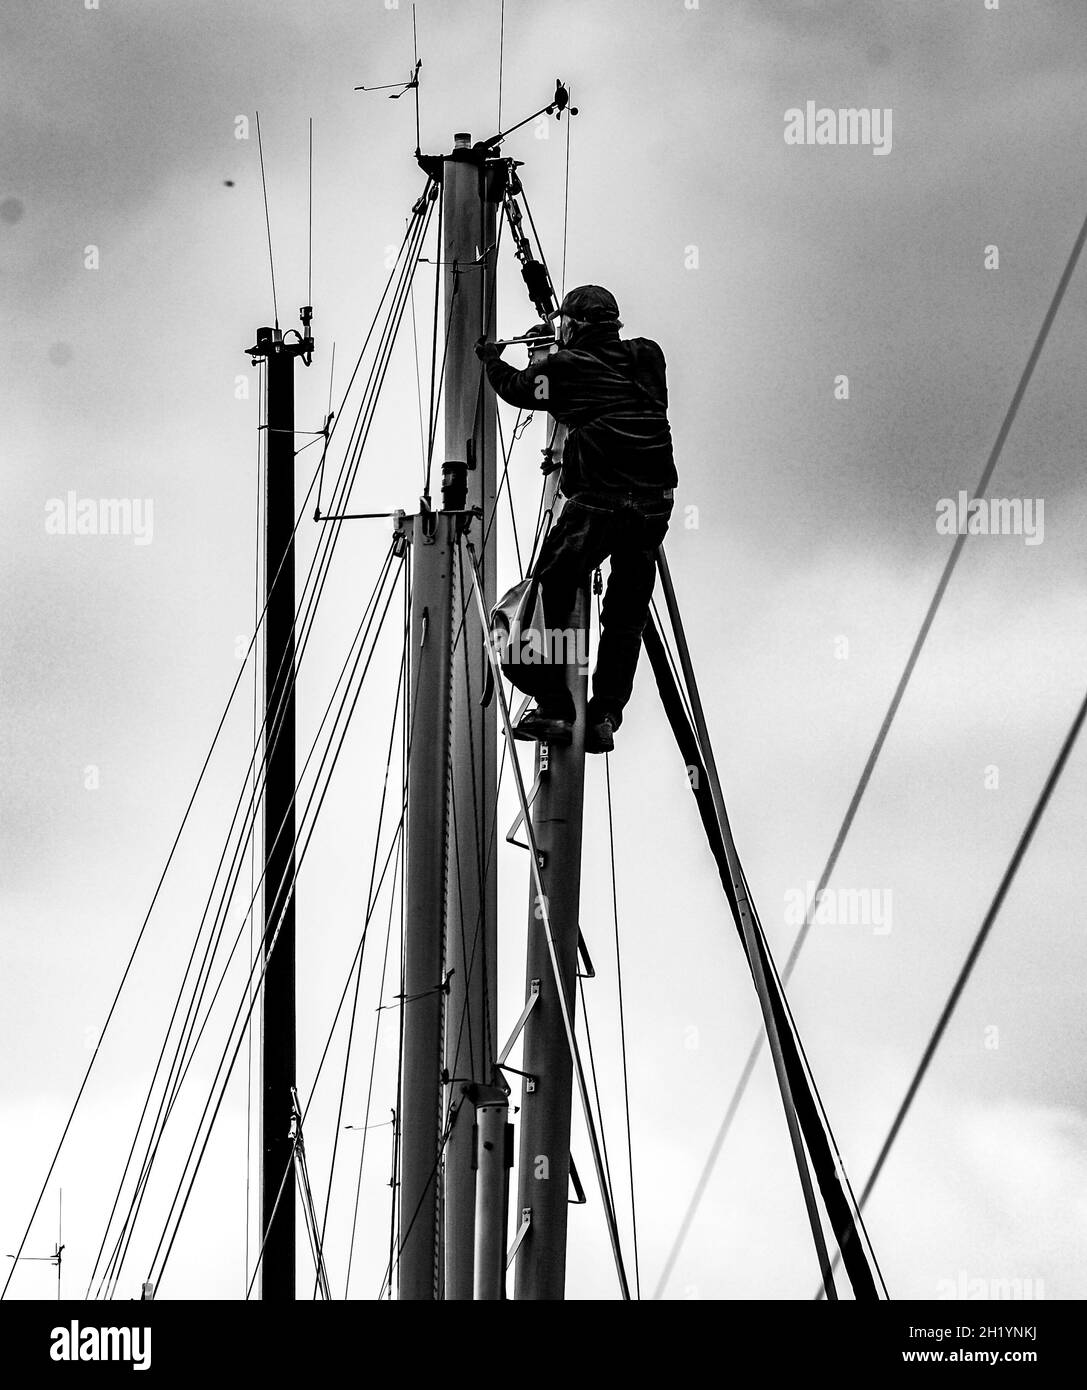 Mât de voilier Banque d'images noir et blanc - Alamy